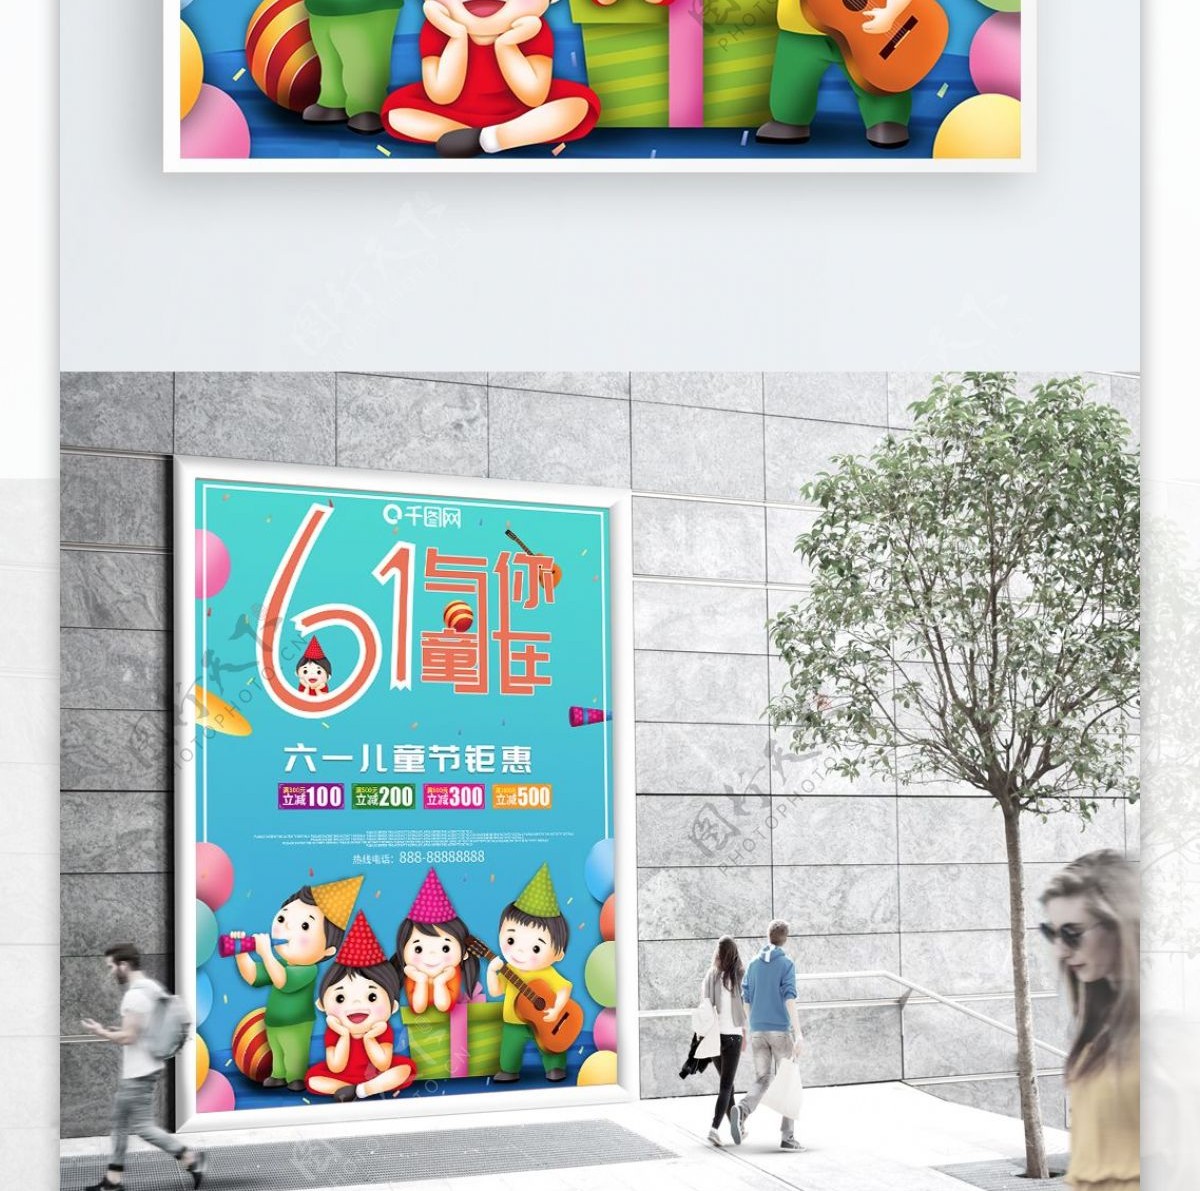 61儿童节与你童在促销海报